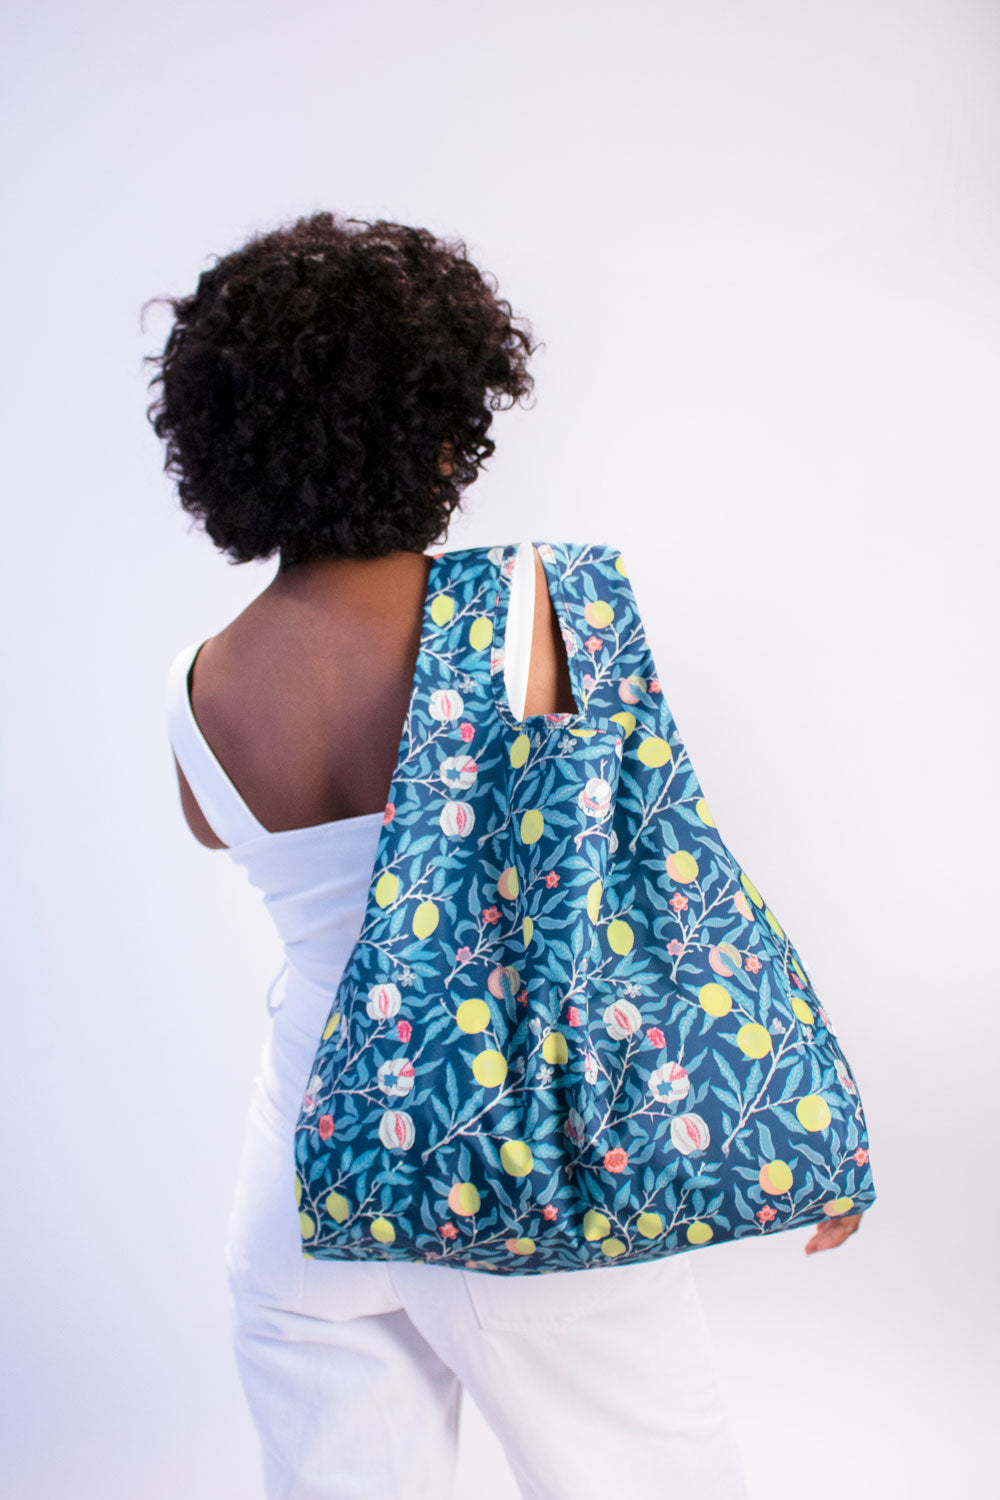 Kind Bag - Recycled, Reusable Shopping Bag